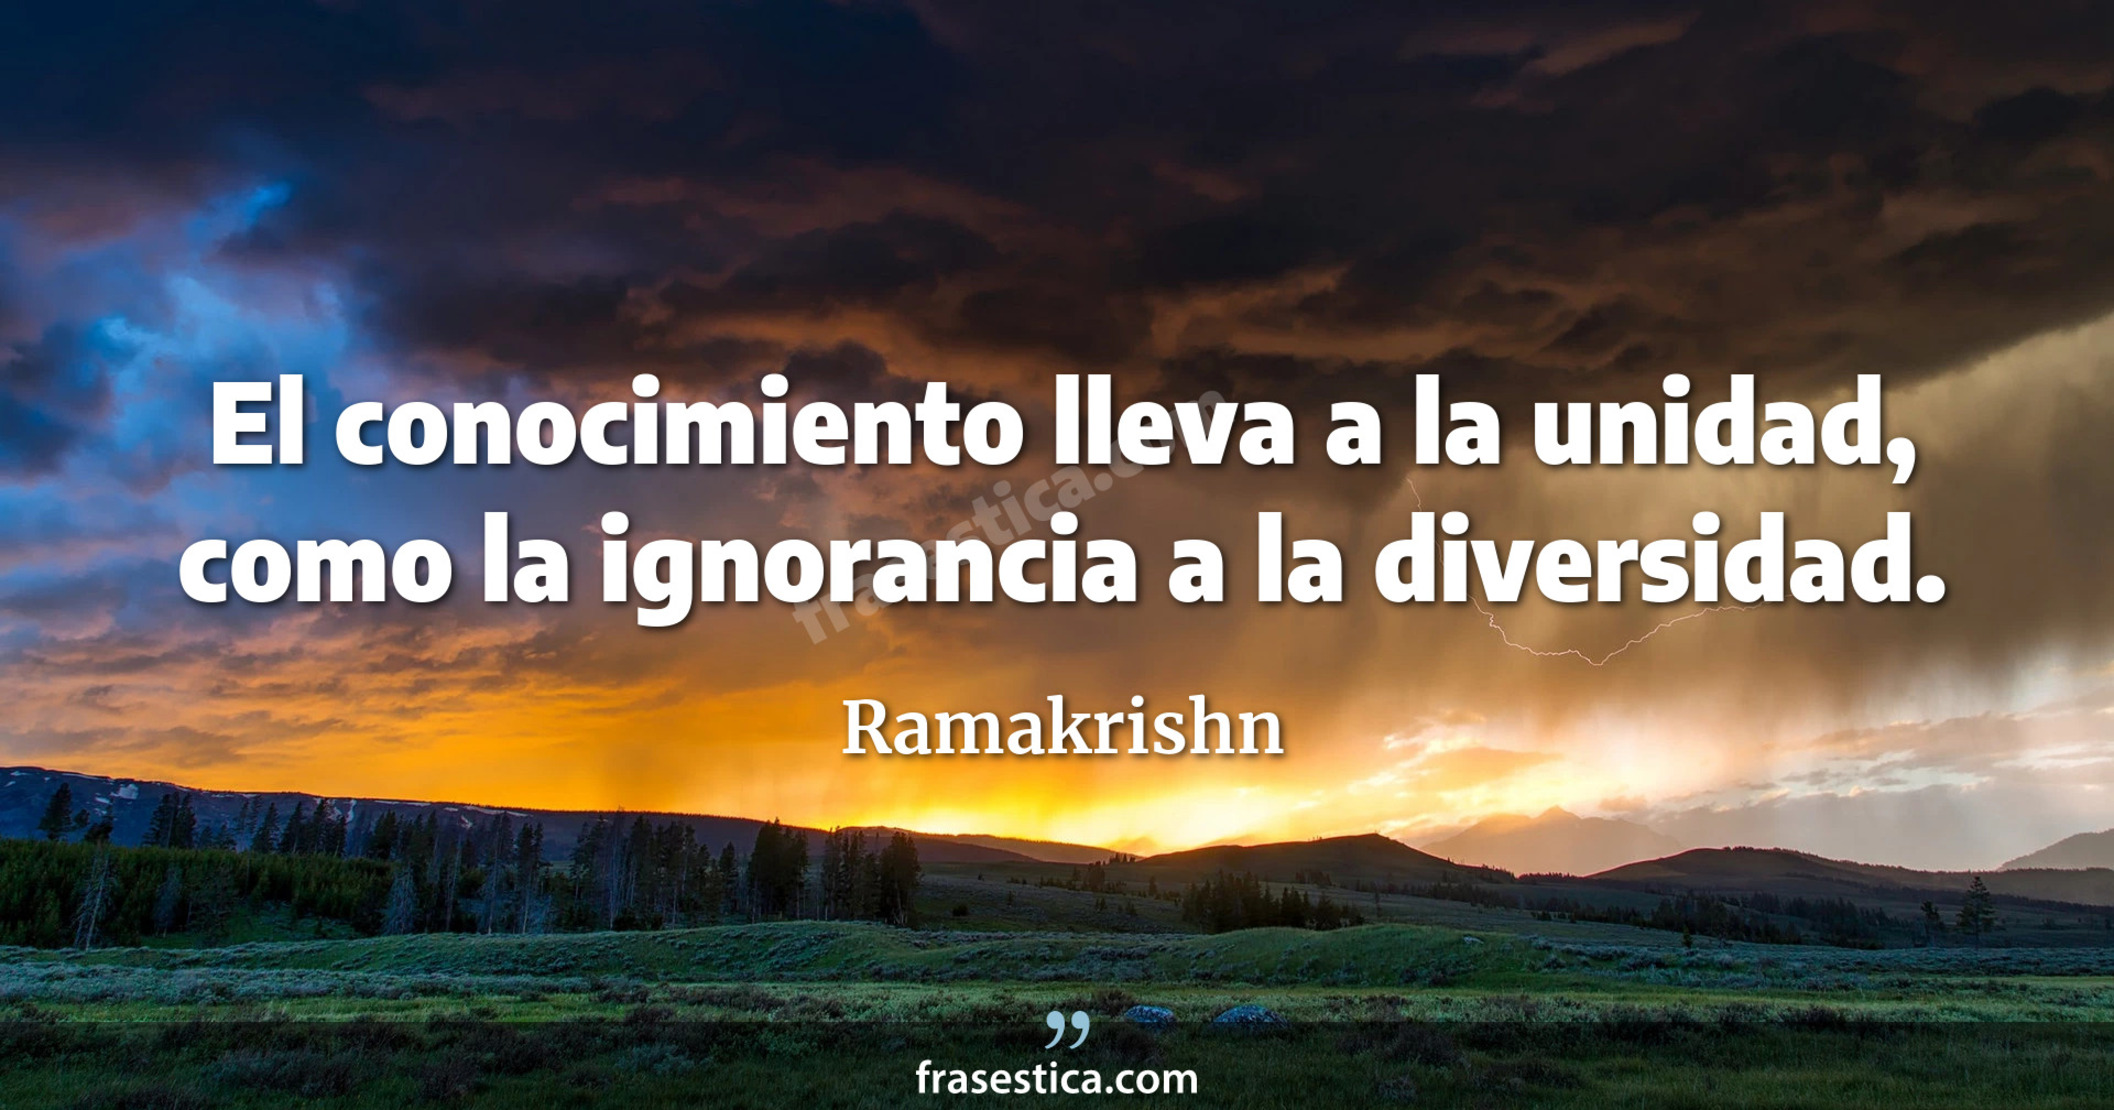 El conocimiento lleva a la unidad, como la ignorancia a la diversidad. - Ramakrishn